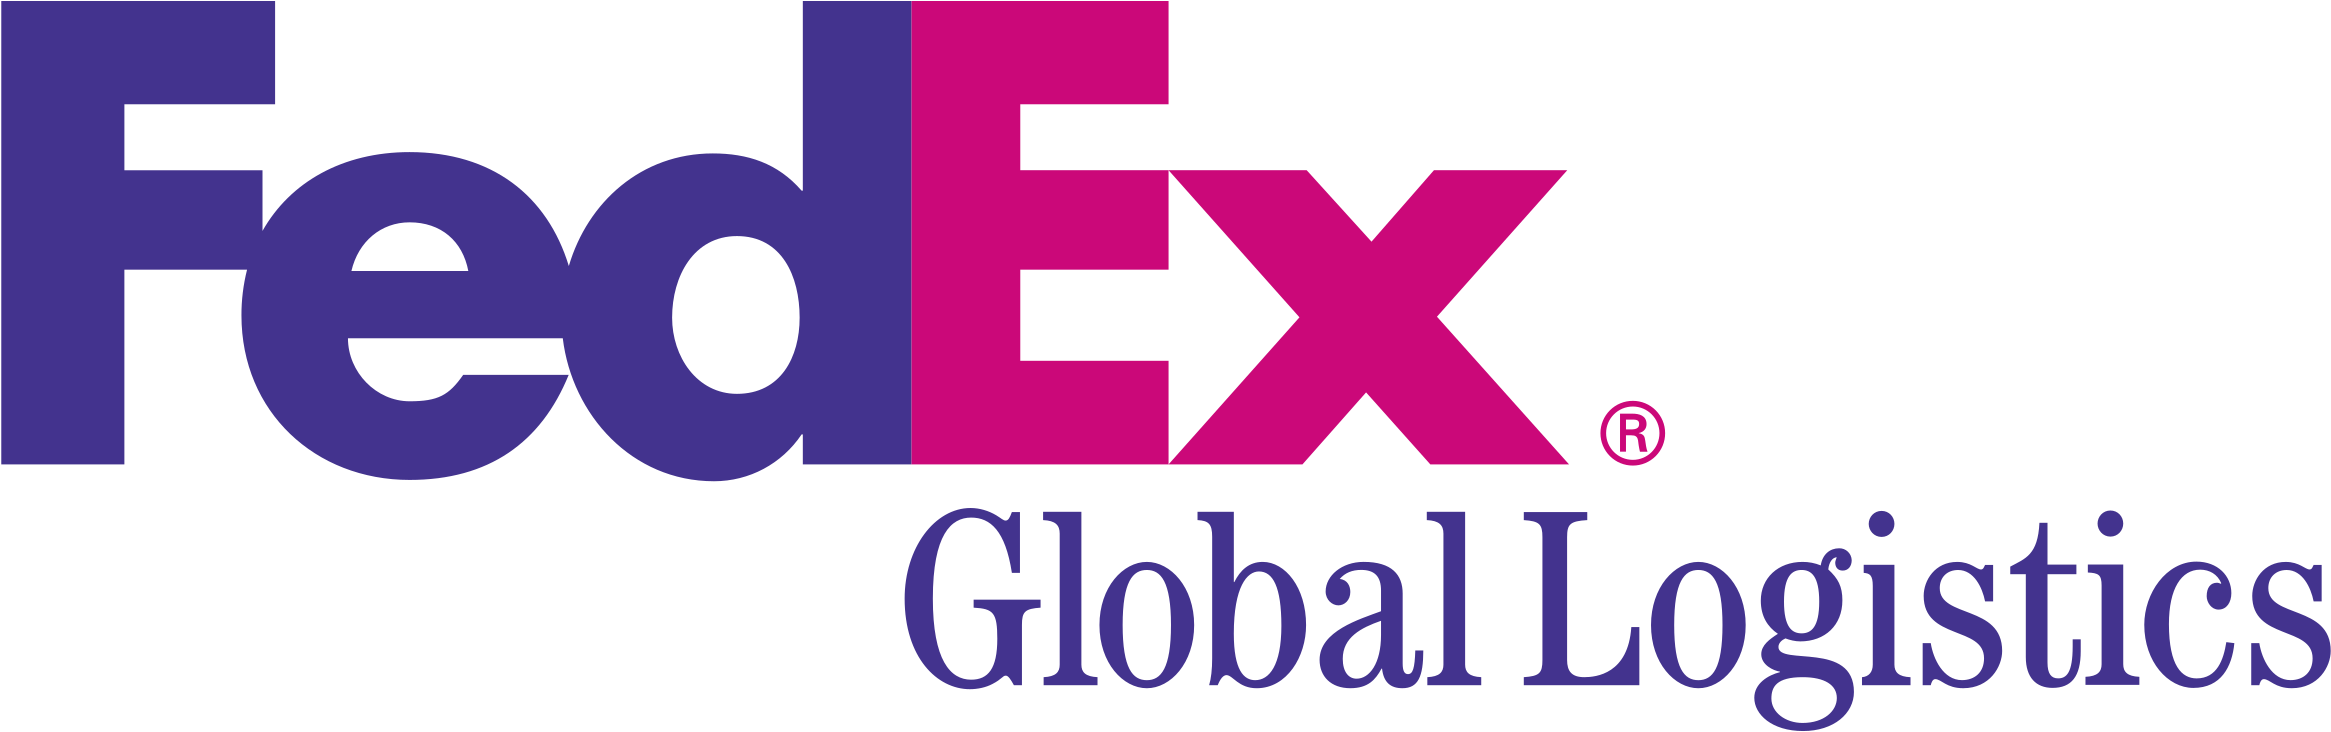 Fed Ex Global Logistics Logo PNG